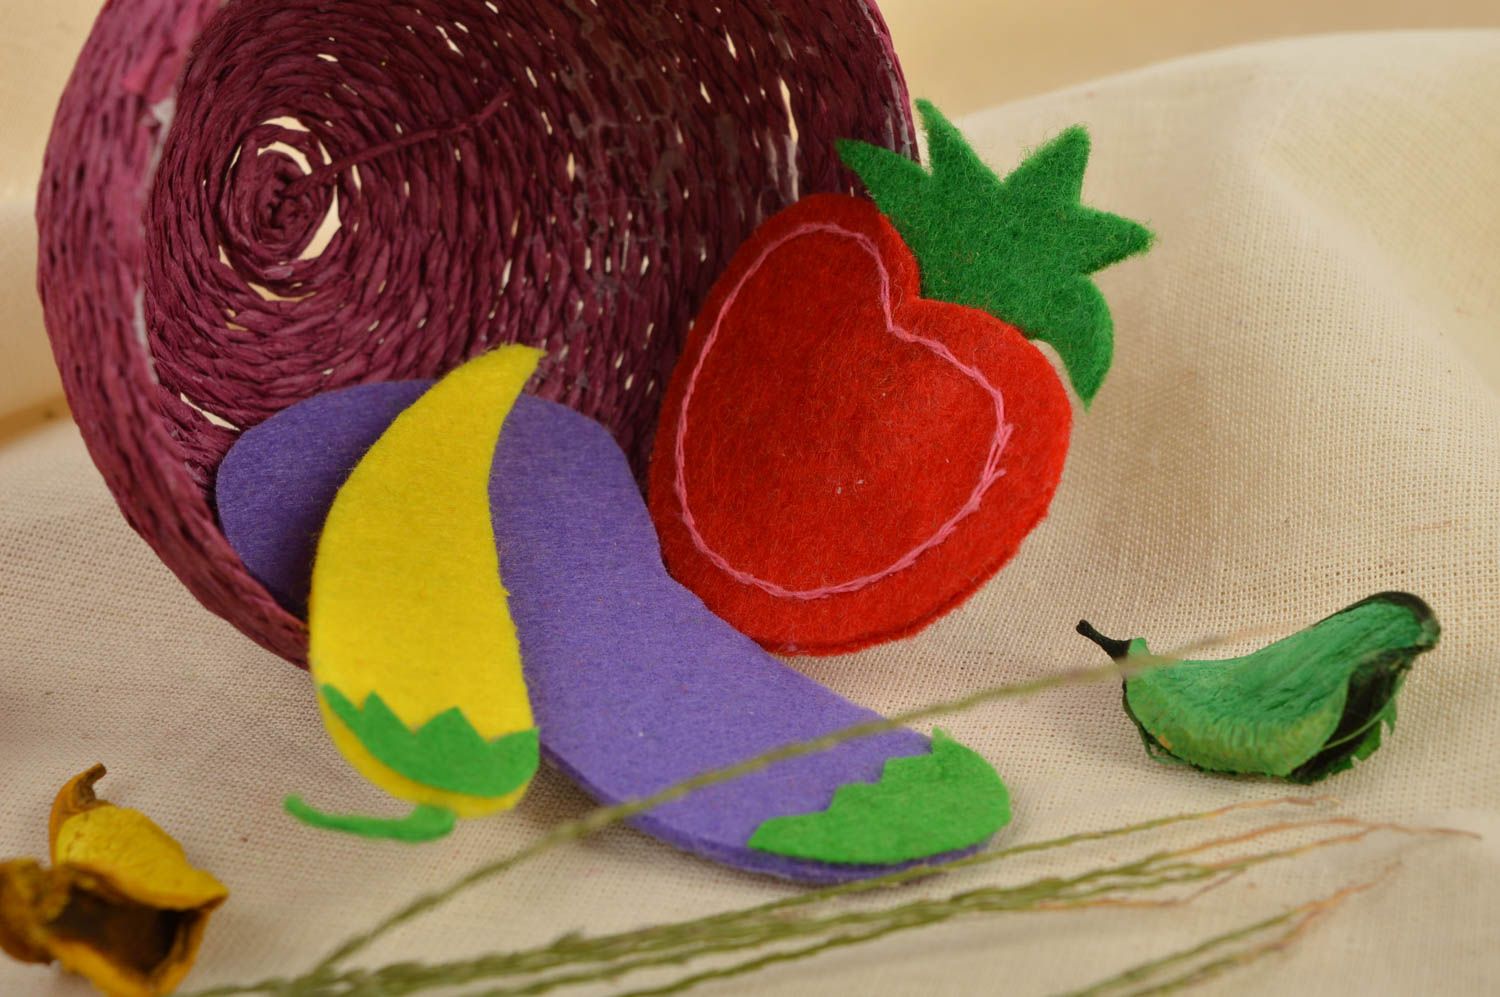 Магниты ручной работы магниты для детей фетровые игрушки в форме овощей 3 шт фото 1